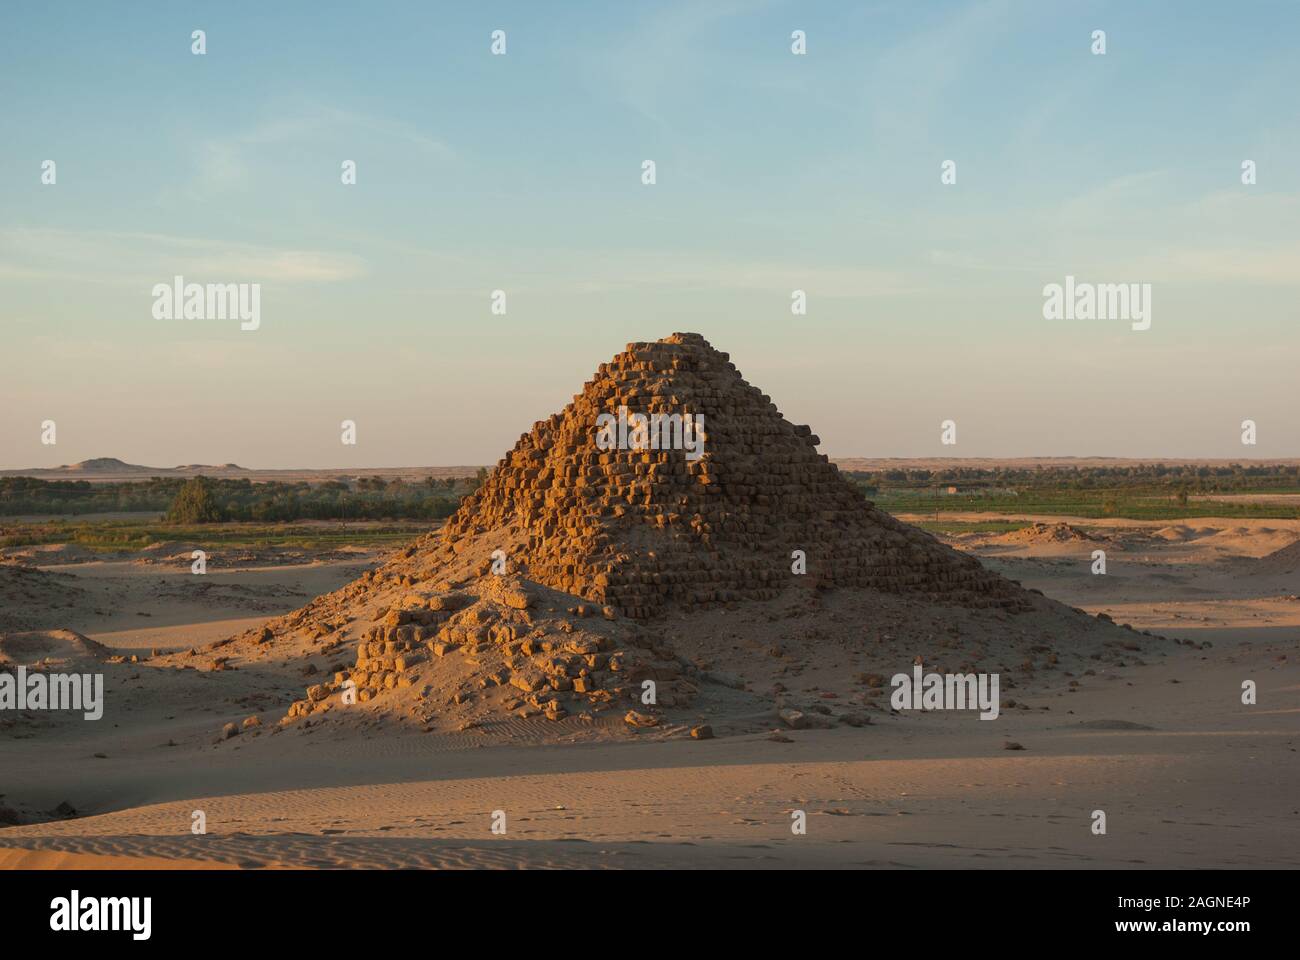 Pyramids, Royal Necropoiis, Nuri near Karima, northern Sudan Stock Photo